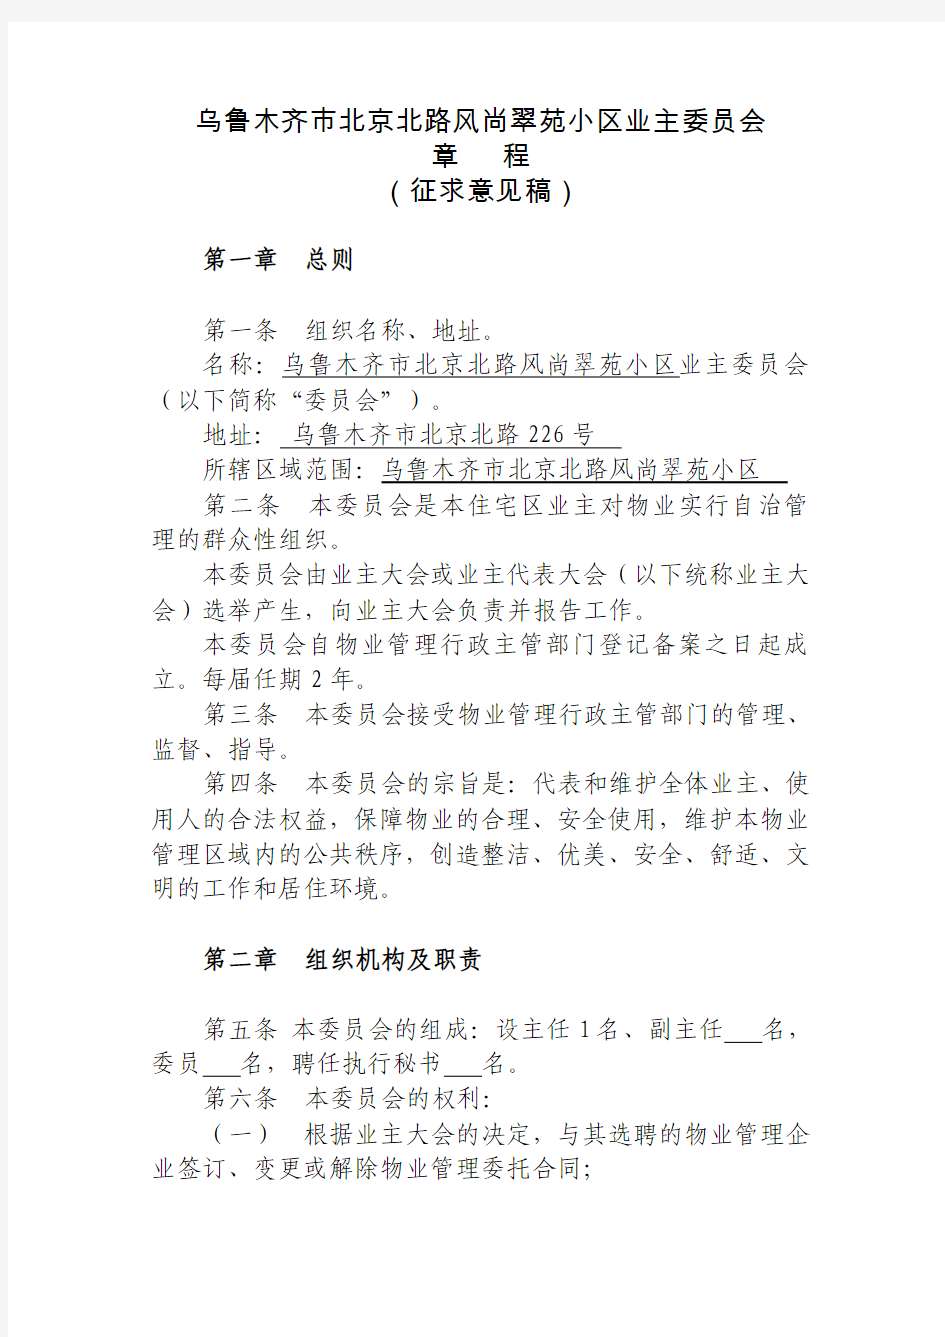 乌鲁木齐市北京北路风尚翠苑小区业主委员会章程